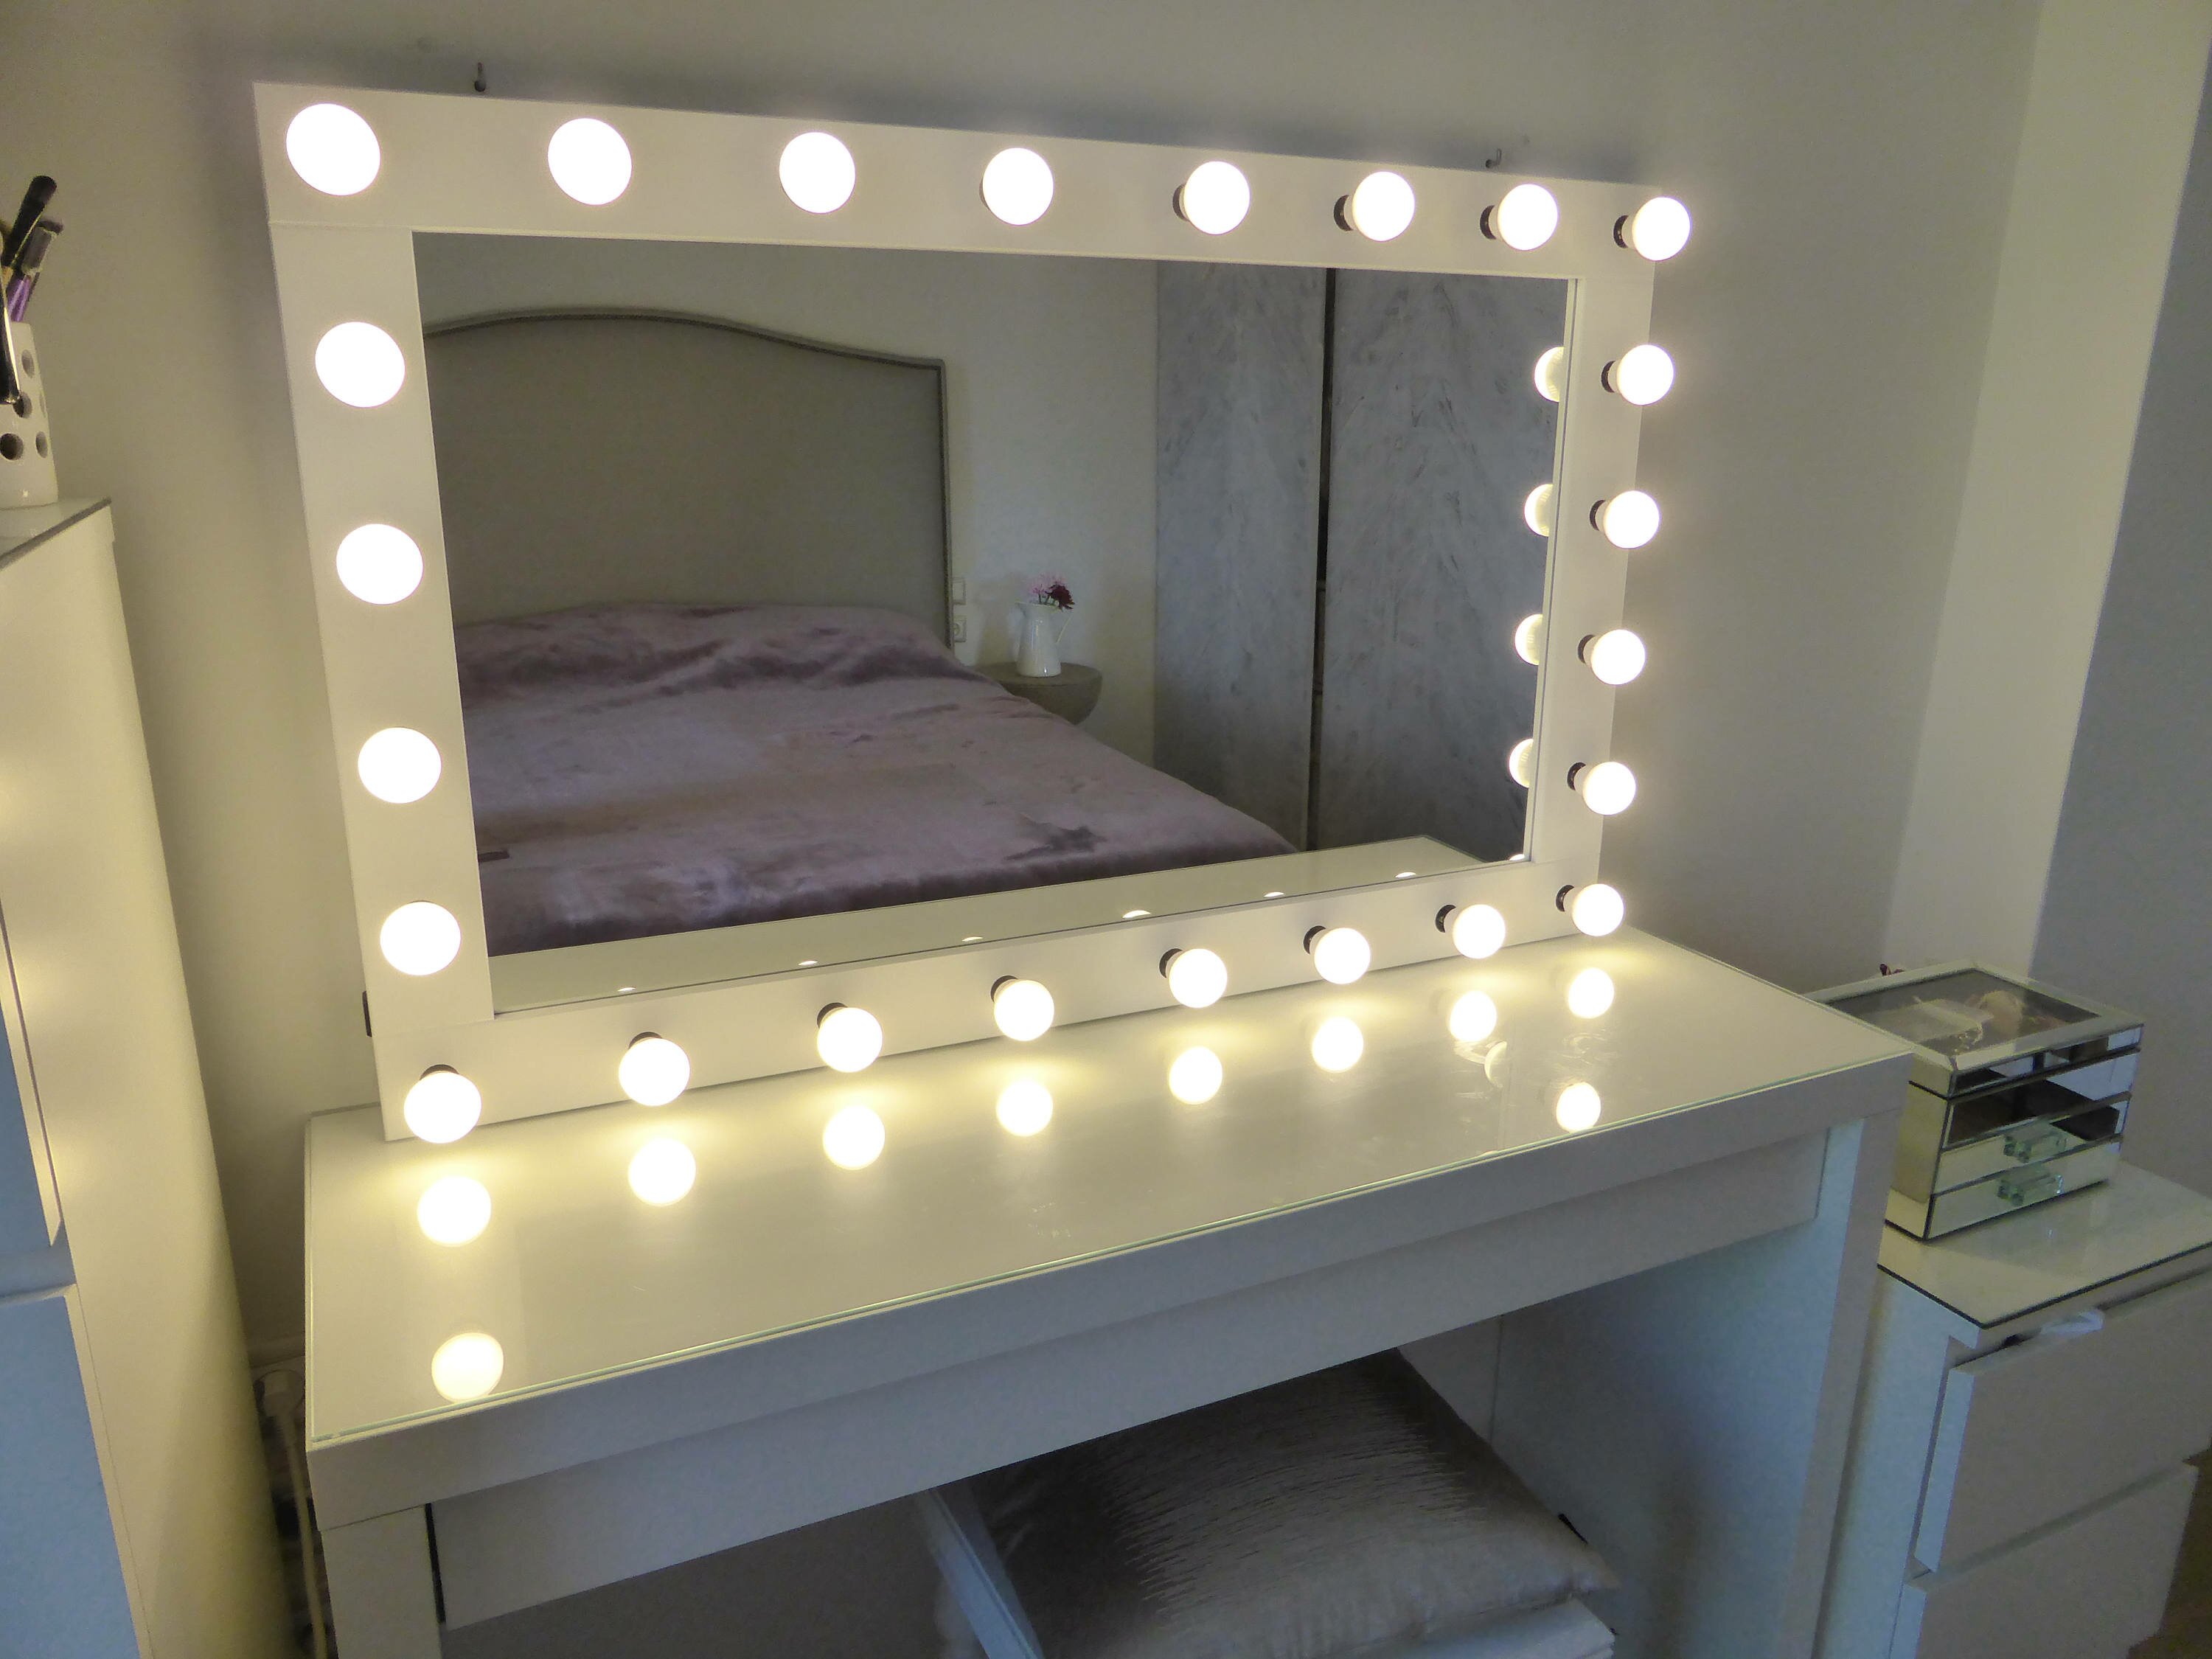 Hollywood Vanity Mirror with Lights | Vanity Makeup Mirrors with Lights | Hollywood Style Makeup Vanity